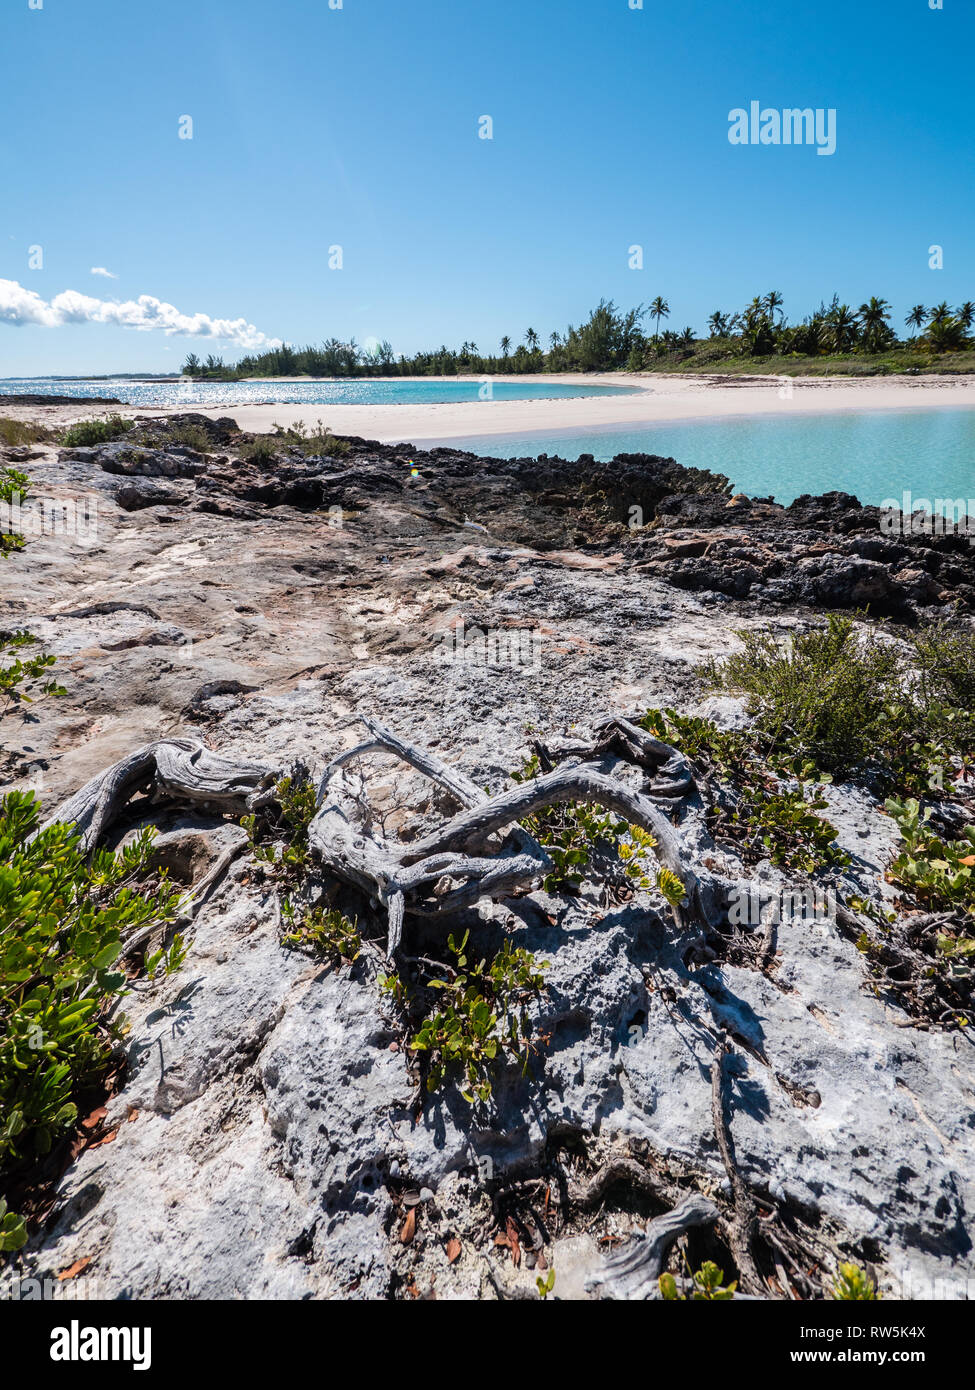 Coral Island avec vue sur la plage des anses double, Governor's Harbour, Île Eleuthera, Bahamas, dans les Caraïbes. Banque D'Images